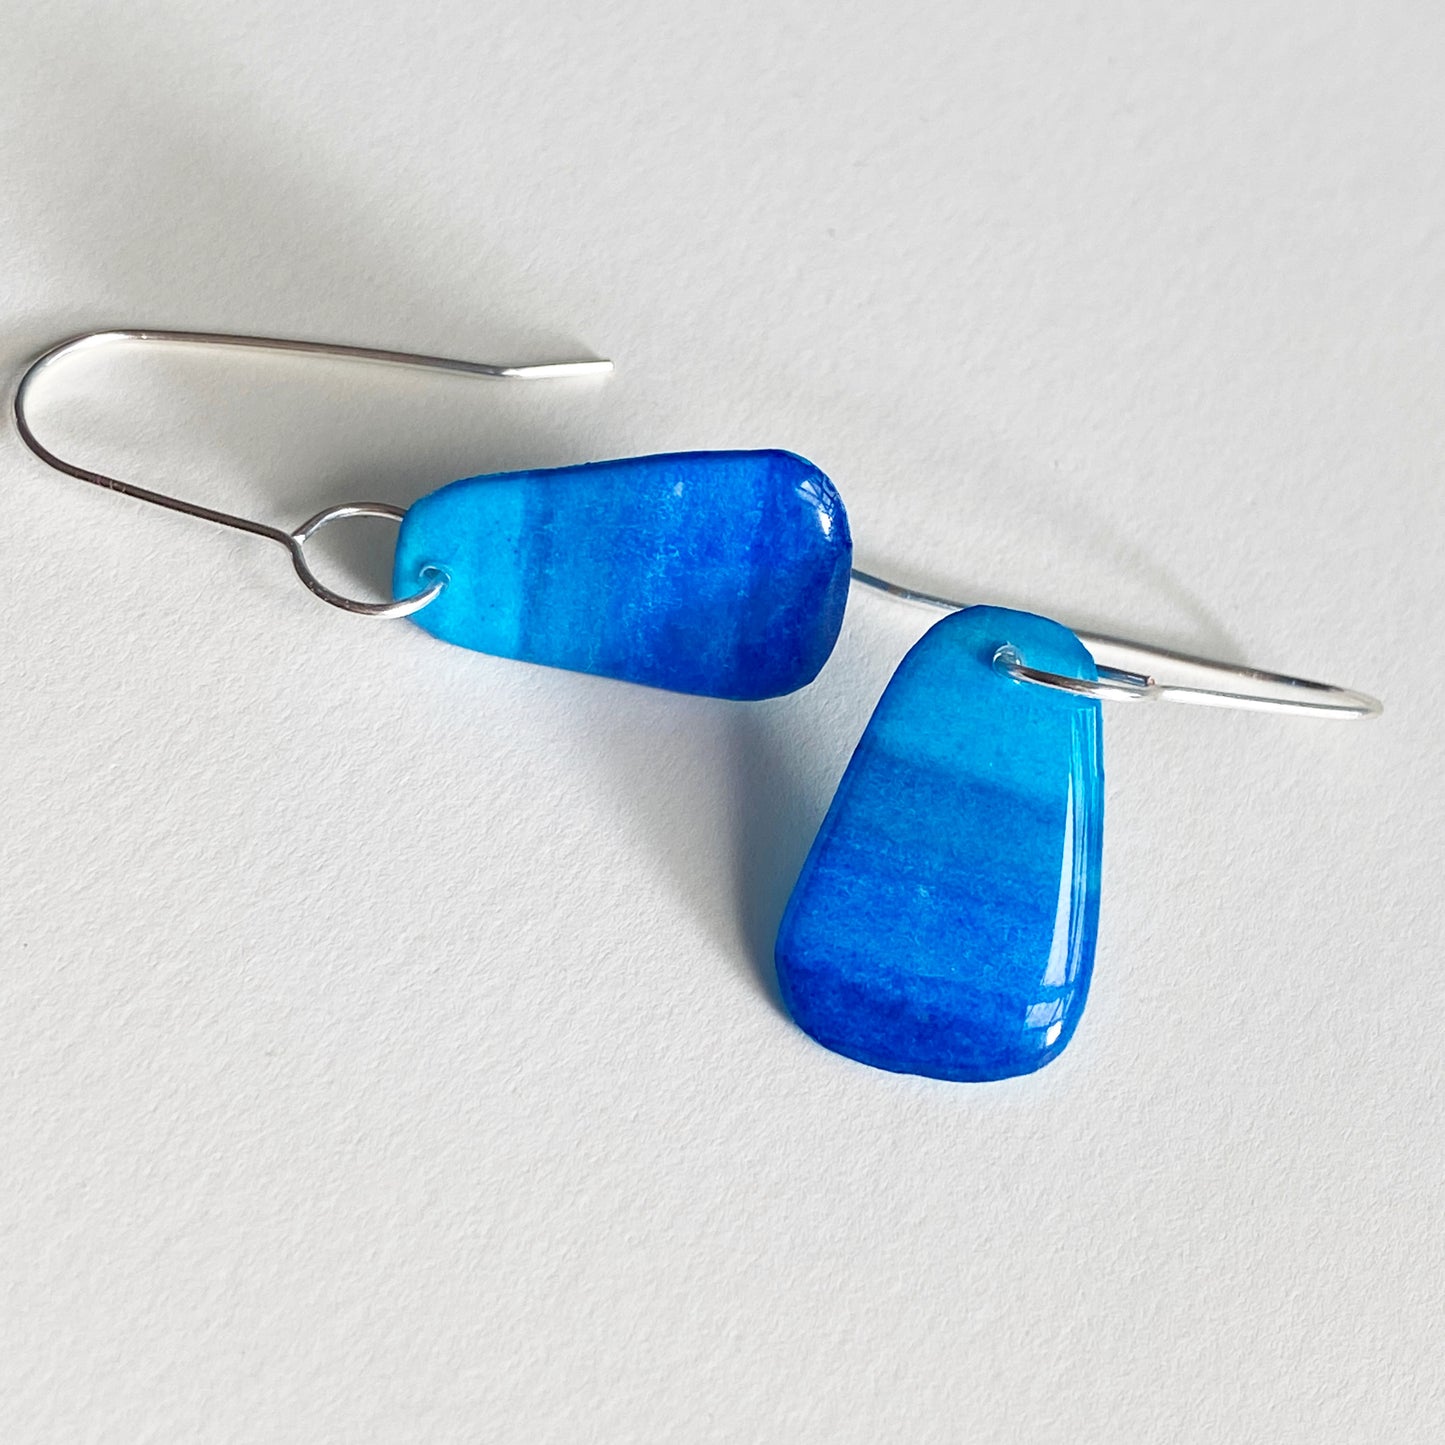 Candy Drops | Blue Ombre Stripe Earrings